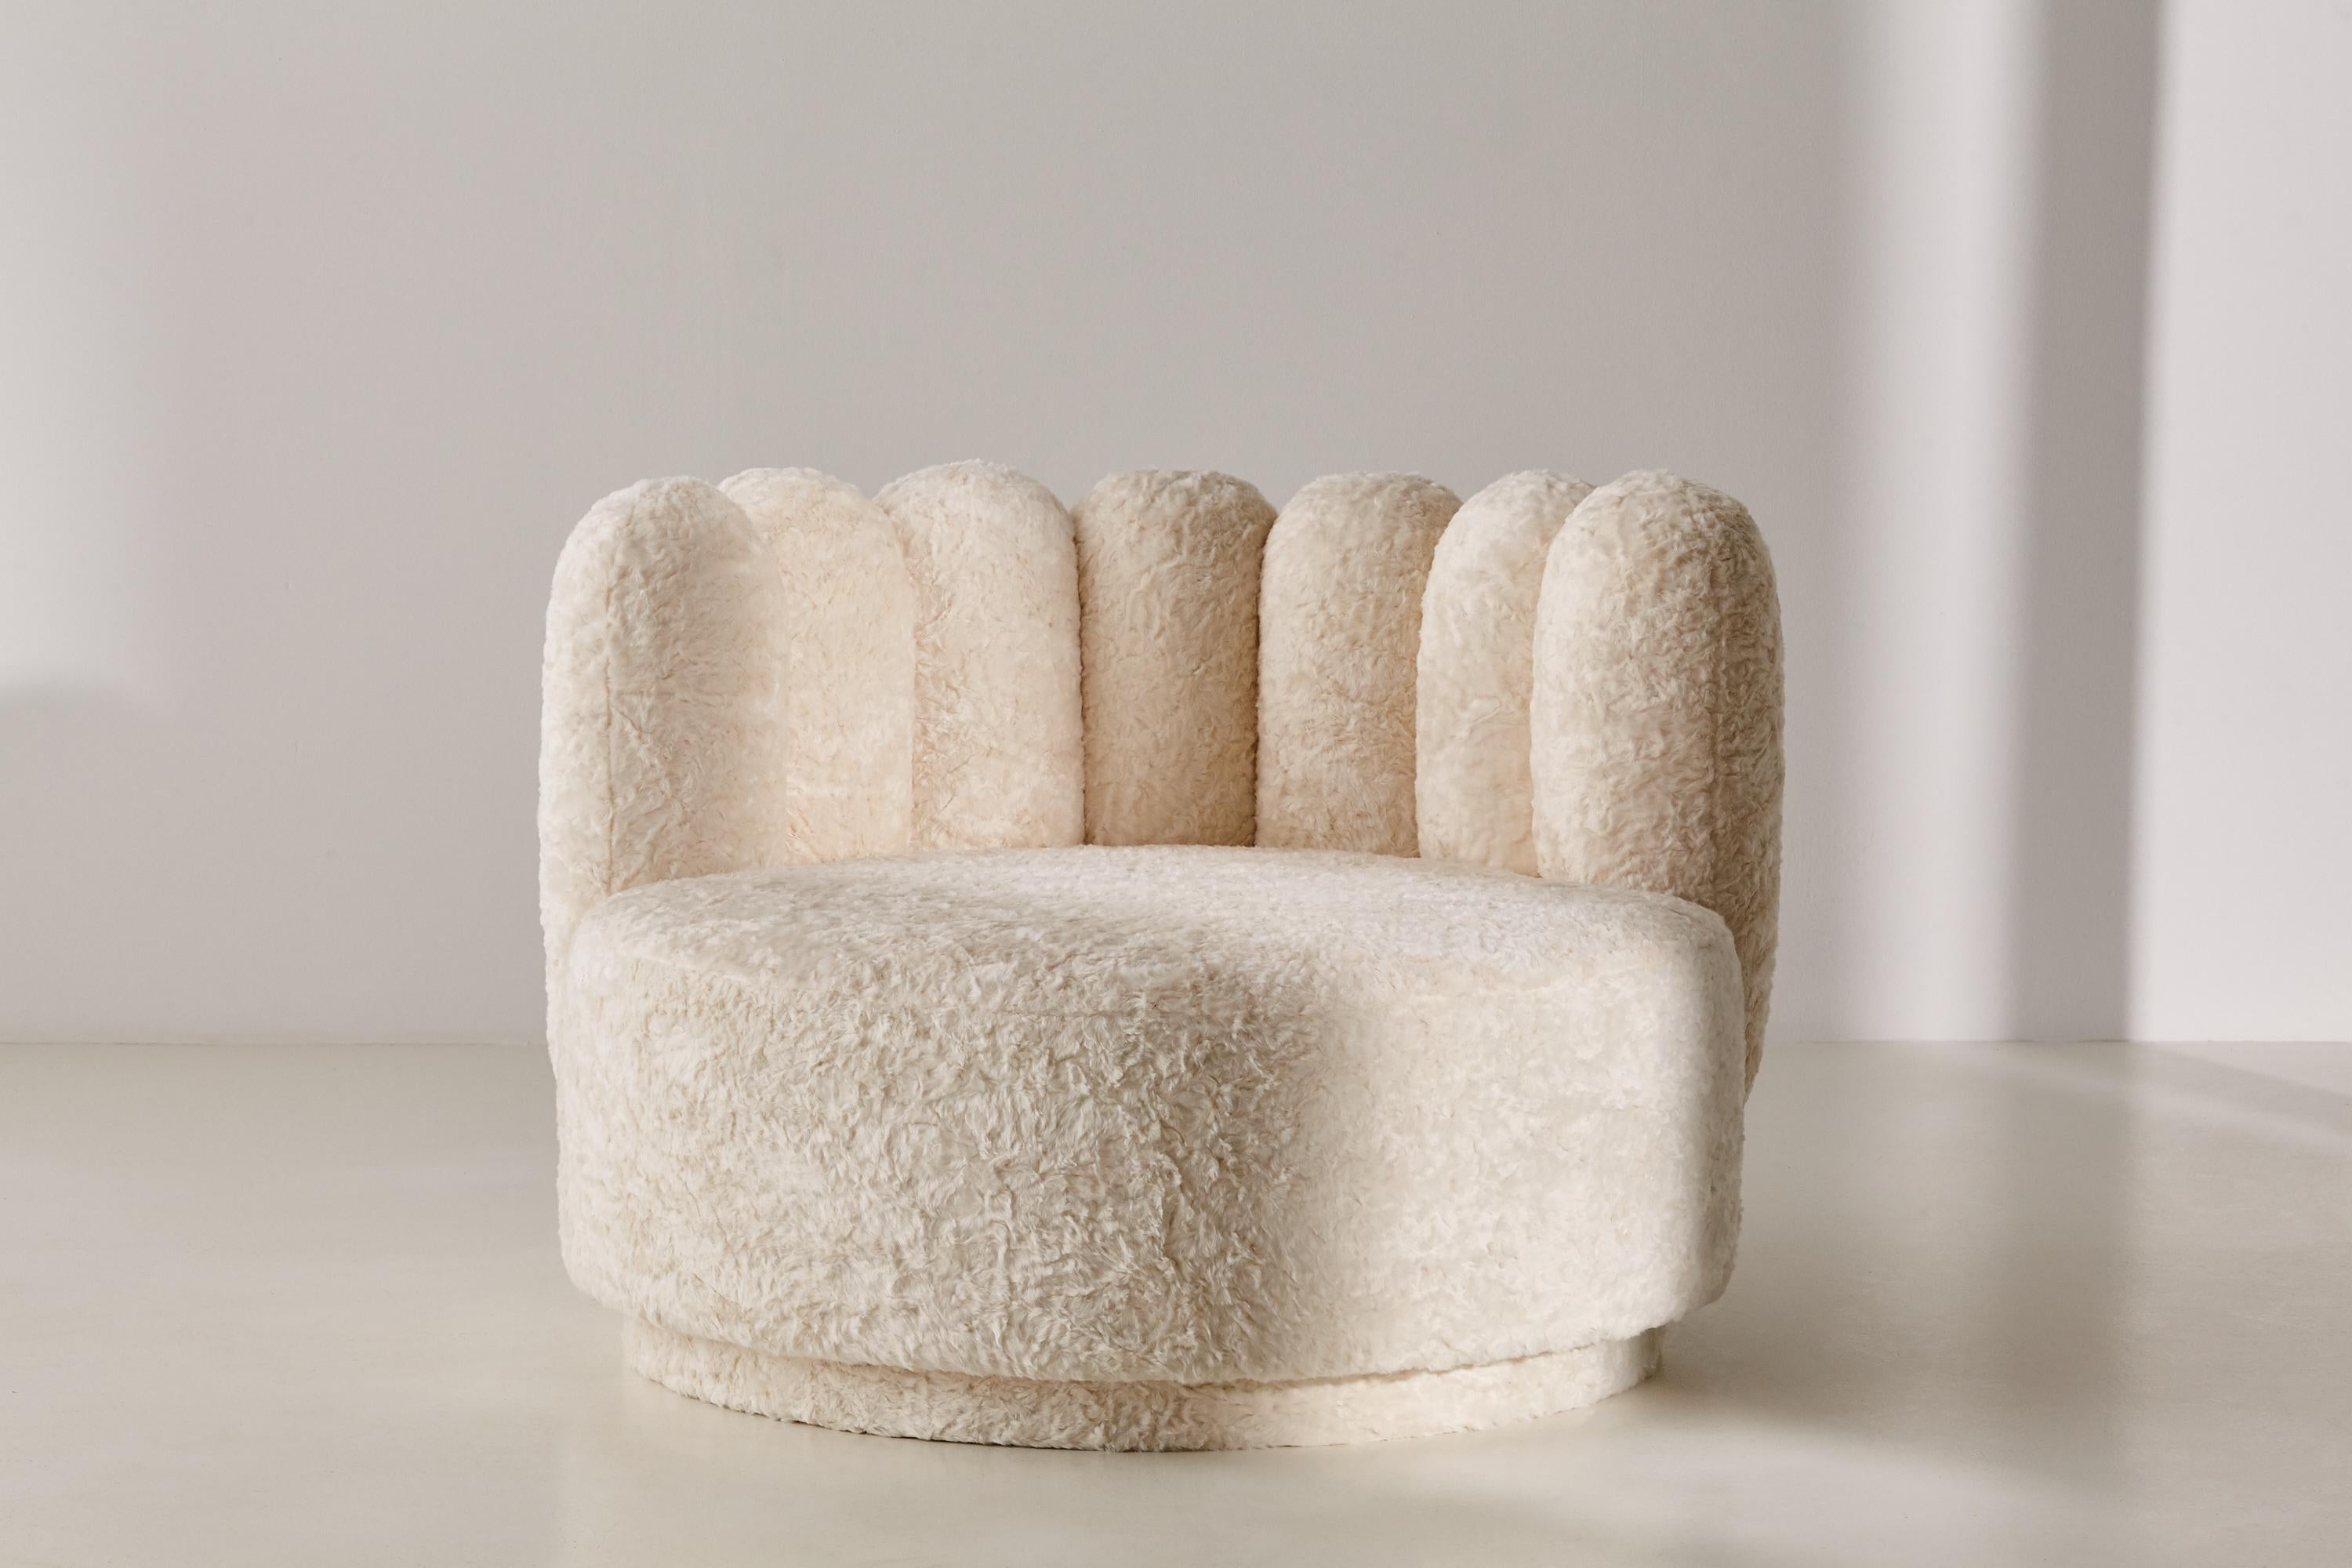 Der große, geschwungene Polar Lounge Chair ist ein gemütliches Plätzchen, das zum Verweilen einlädt. Er ist überdimensioniert und besonders tief, viel größer als ein normaler Sessel. Unserer Meinung nach ist er der perfekte Stuhl für einen großen